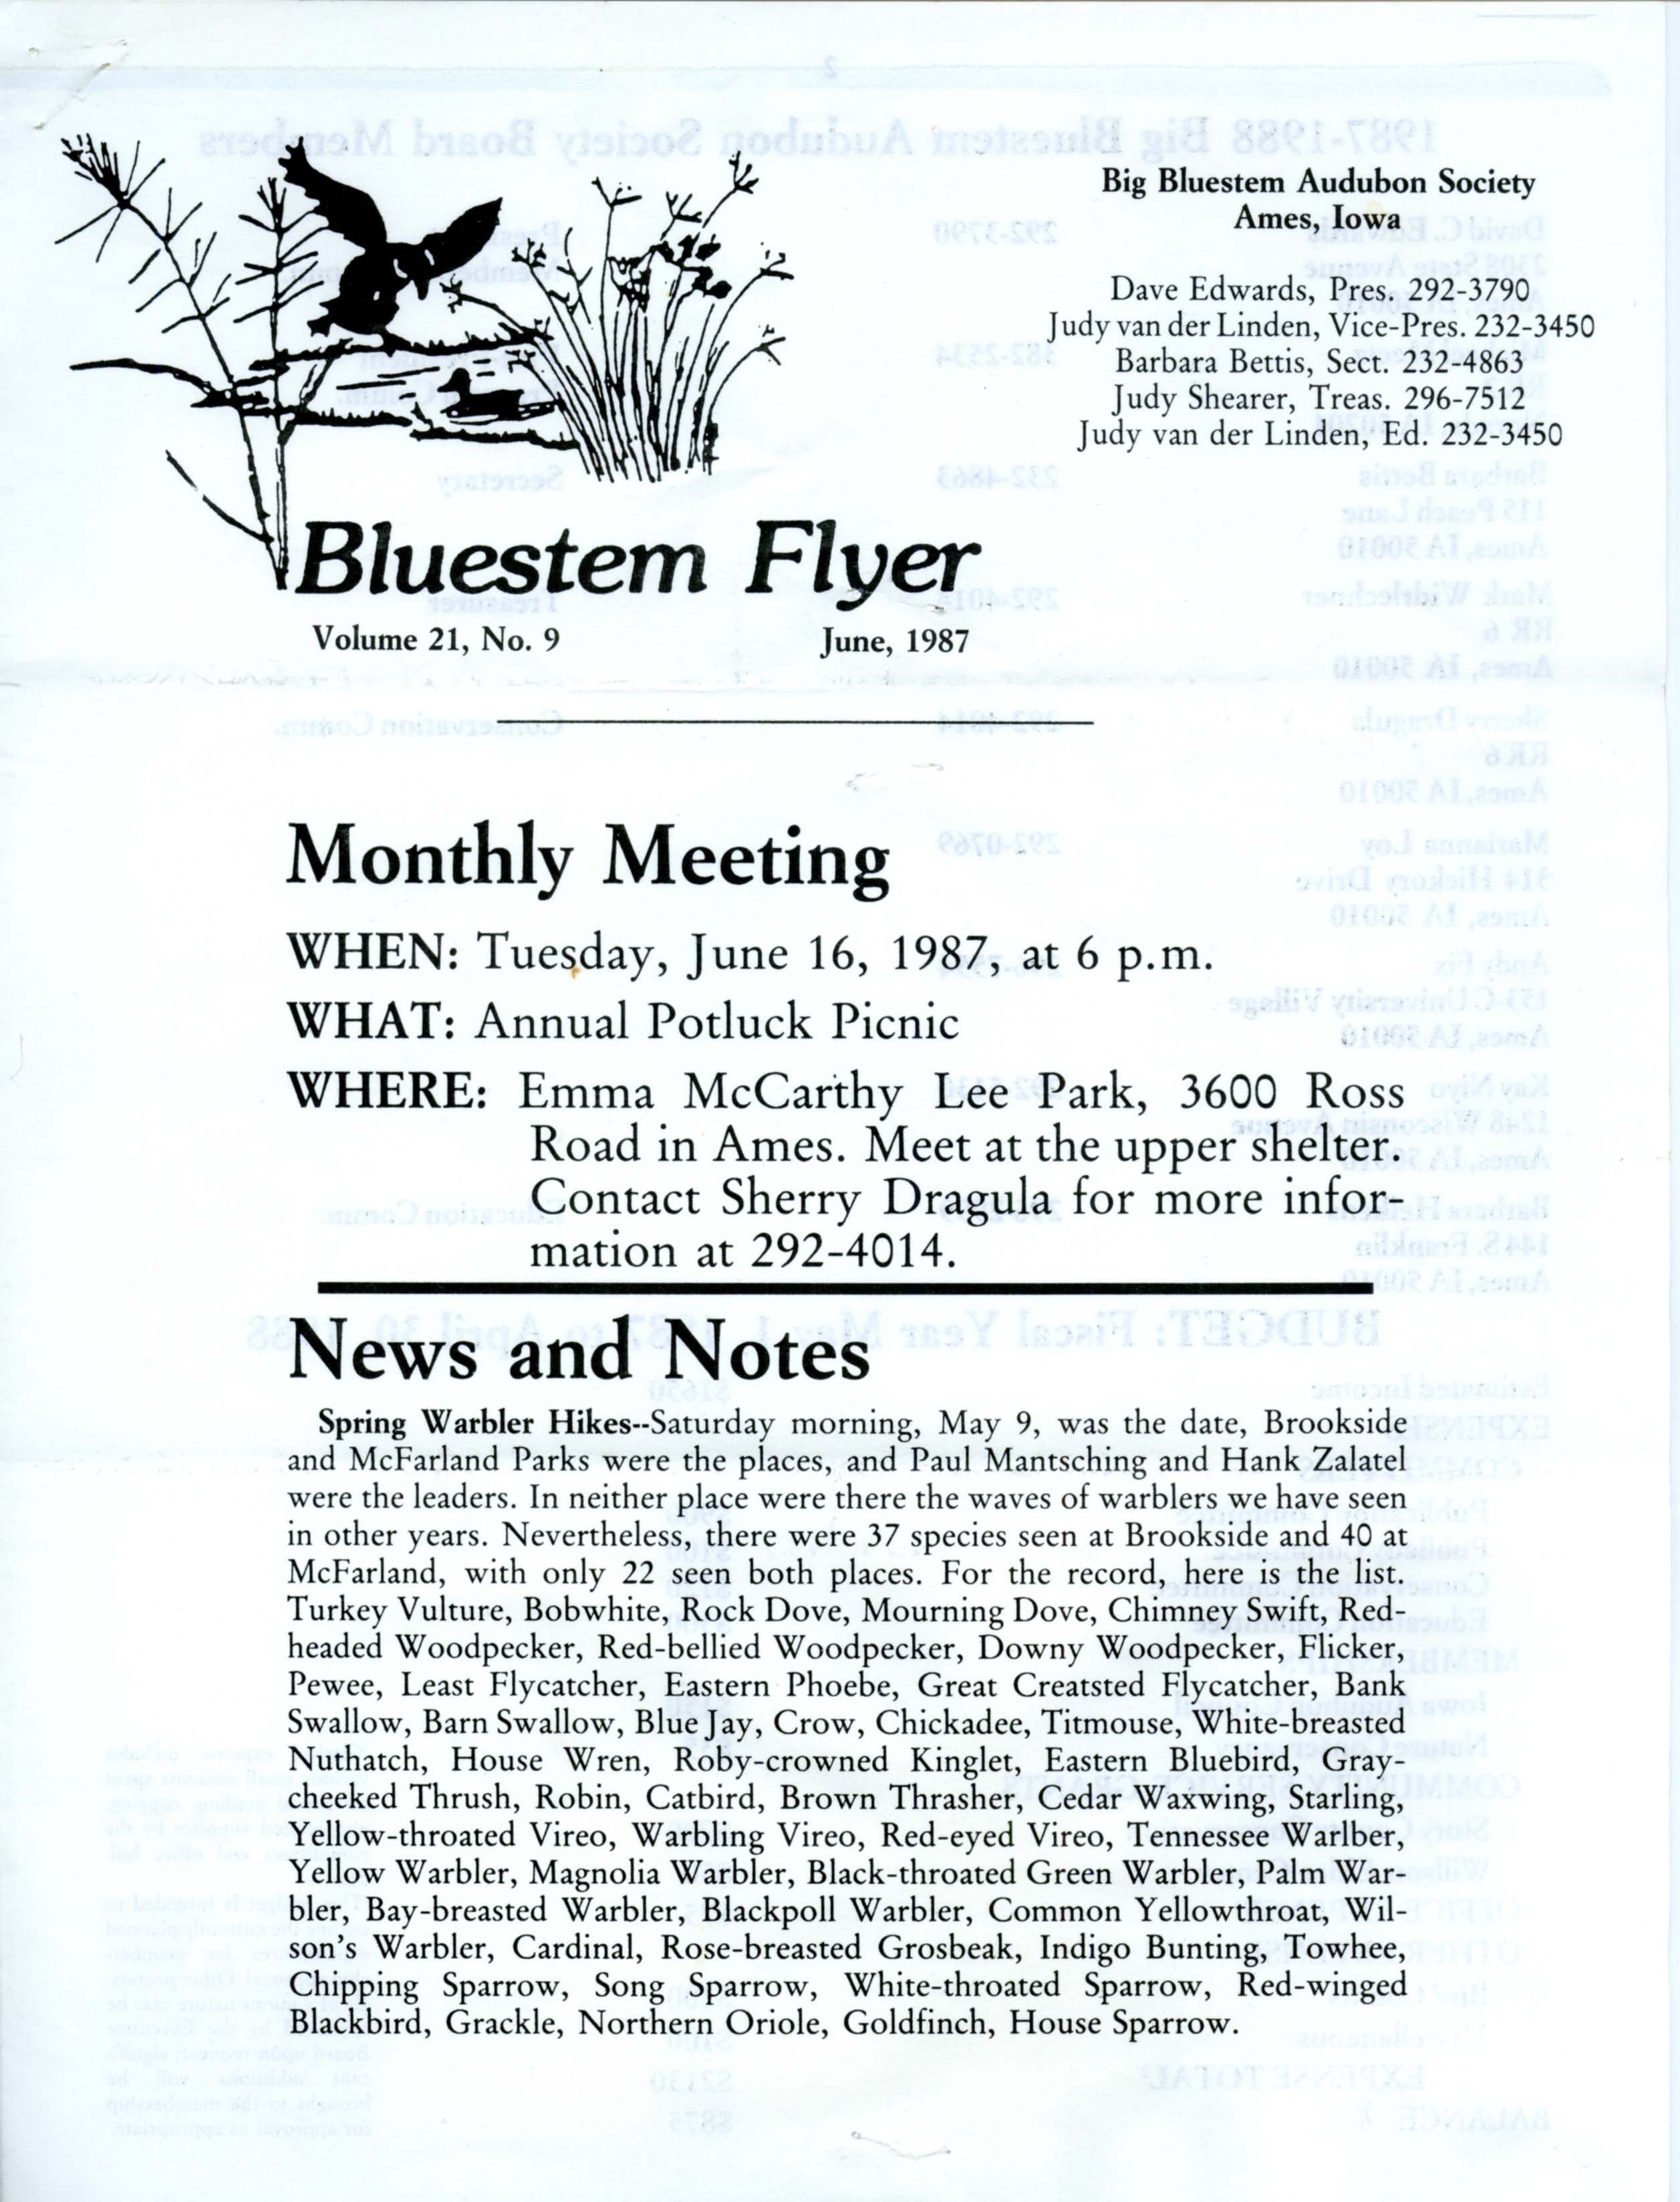 Bluestem Flyer, Volume 21, Number 9, June 1987